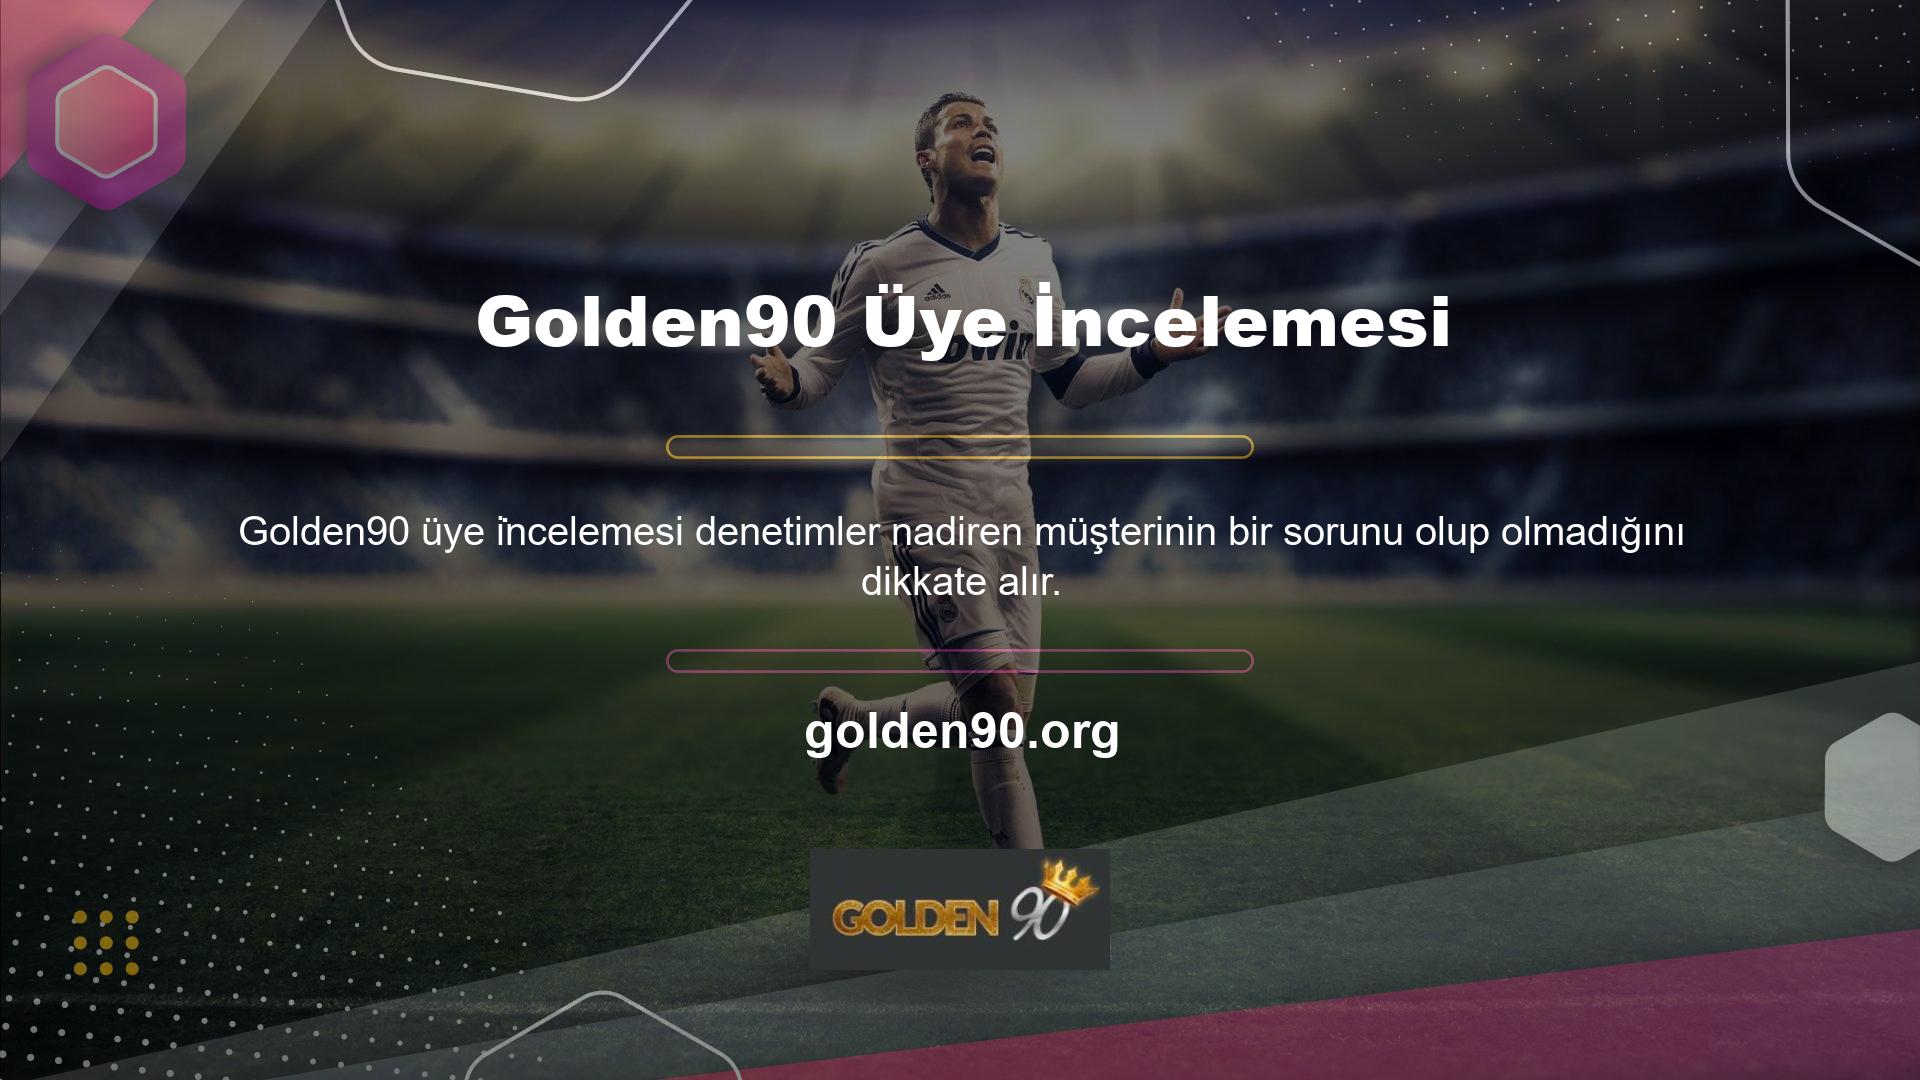 Golden90 üyeleri birçok olumlu yorum bıraktı